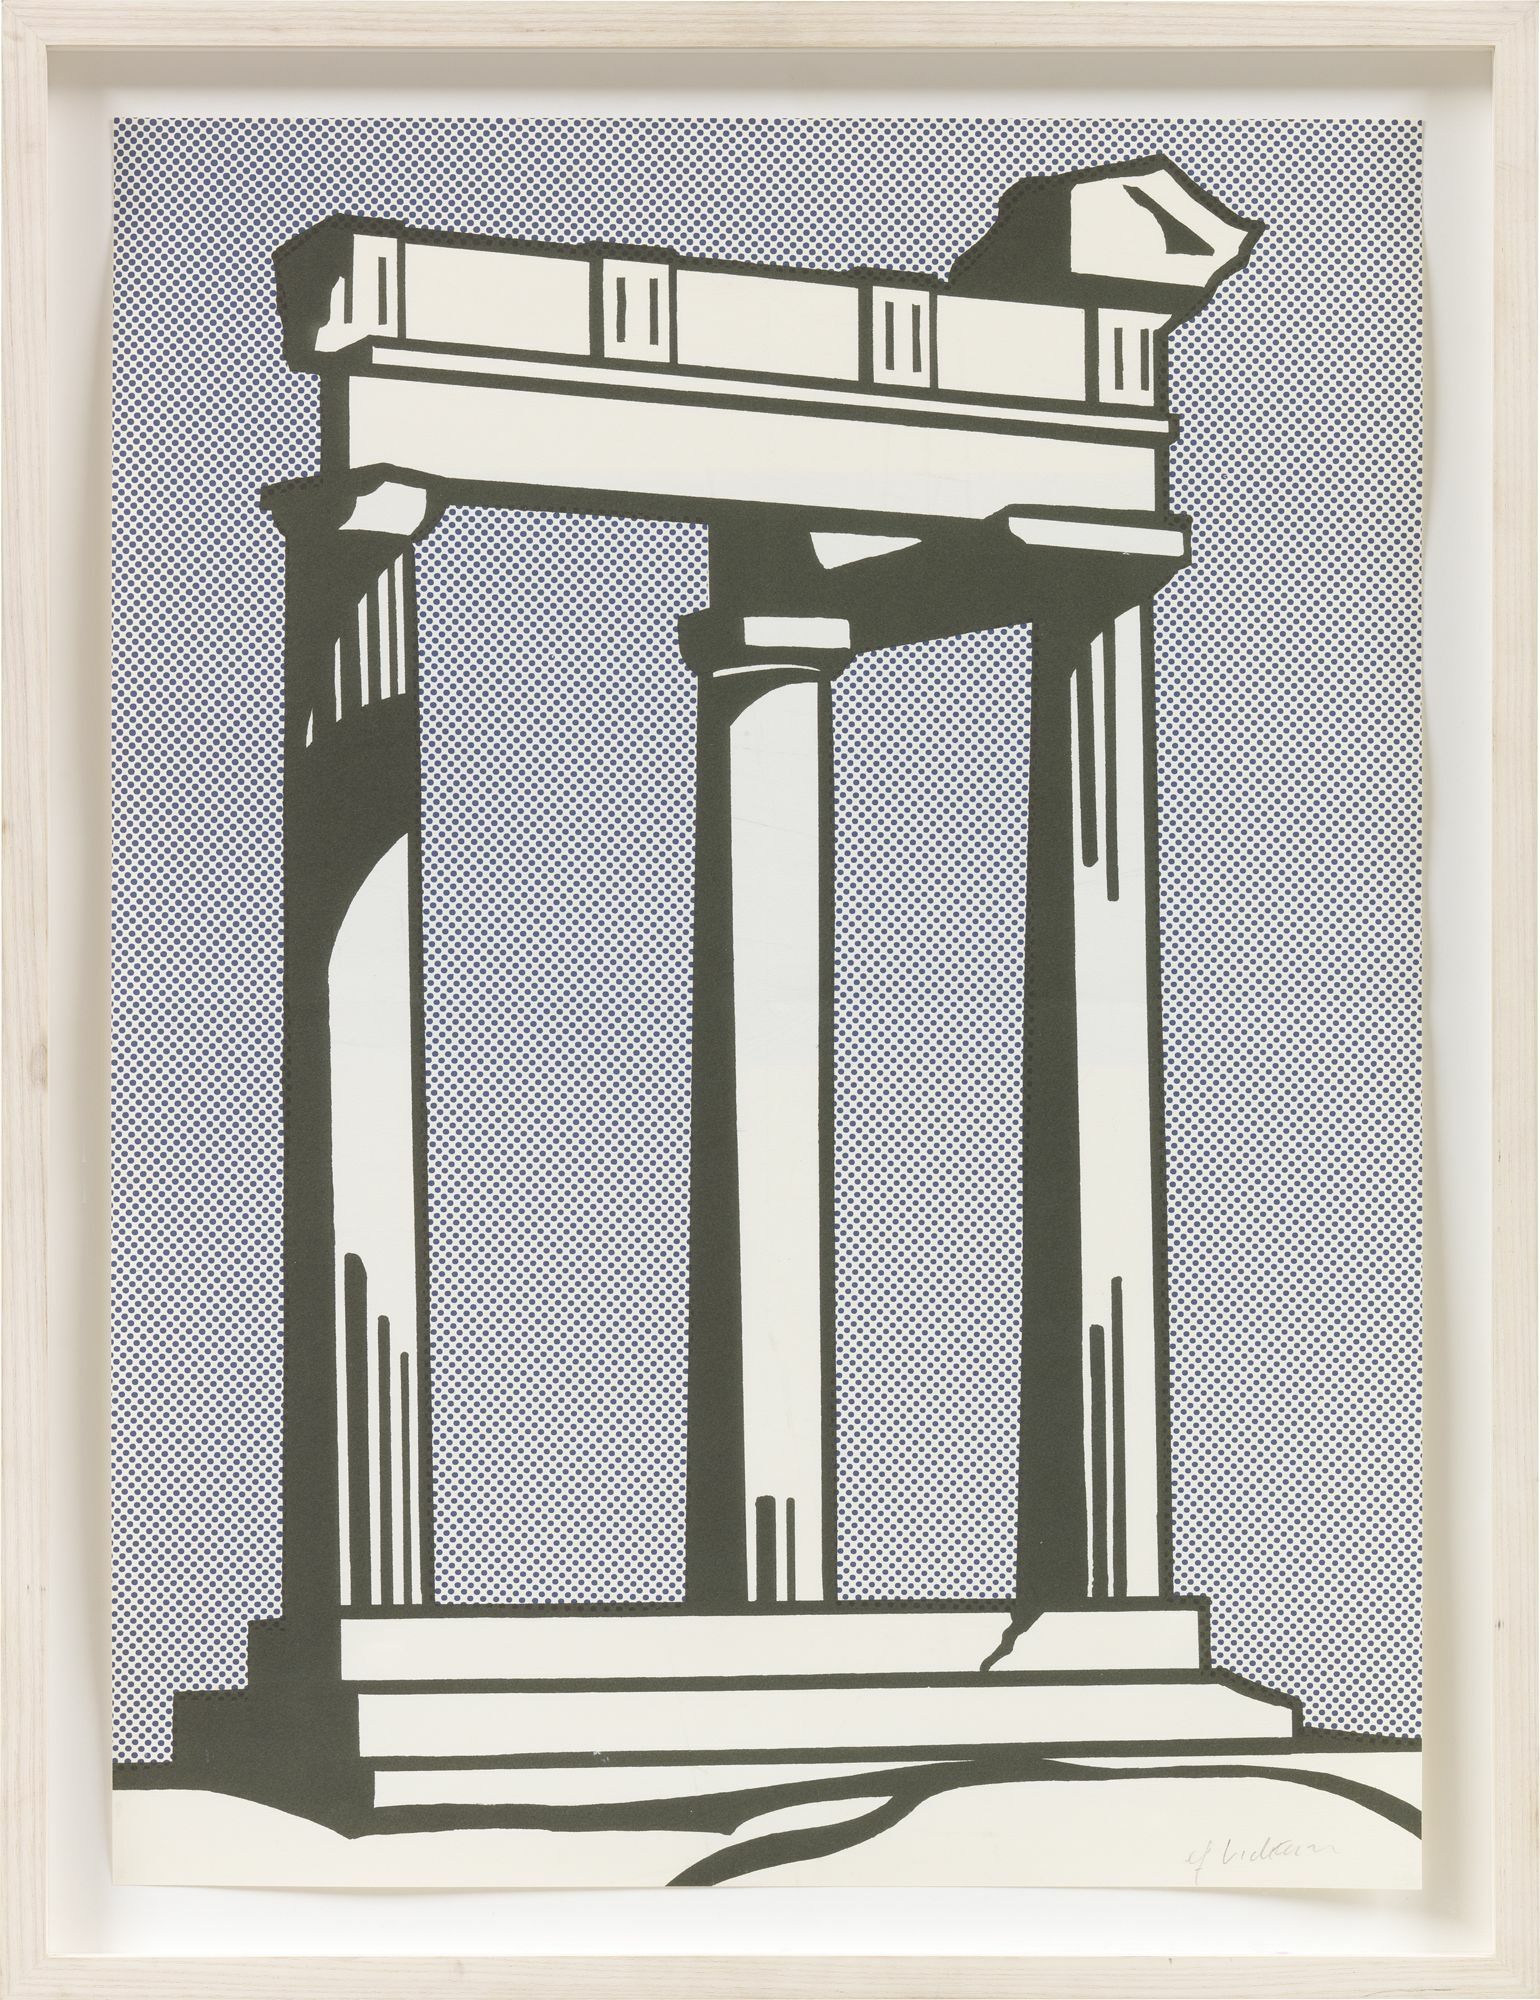 Picture "Temple (Mailer)" (1964) by Roy Lichtenstein